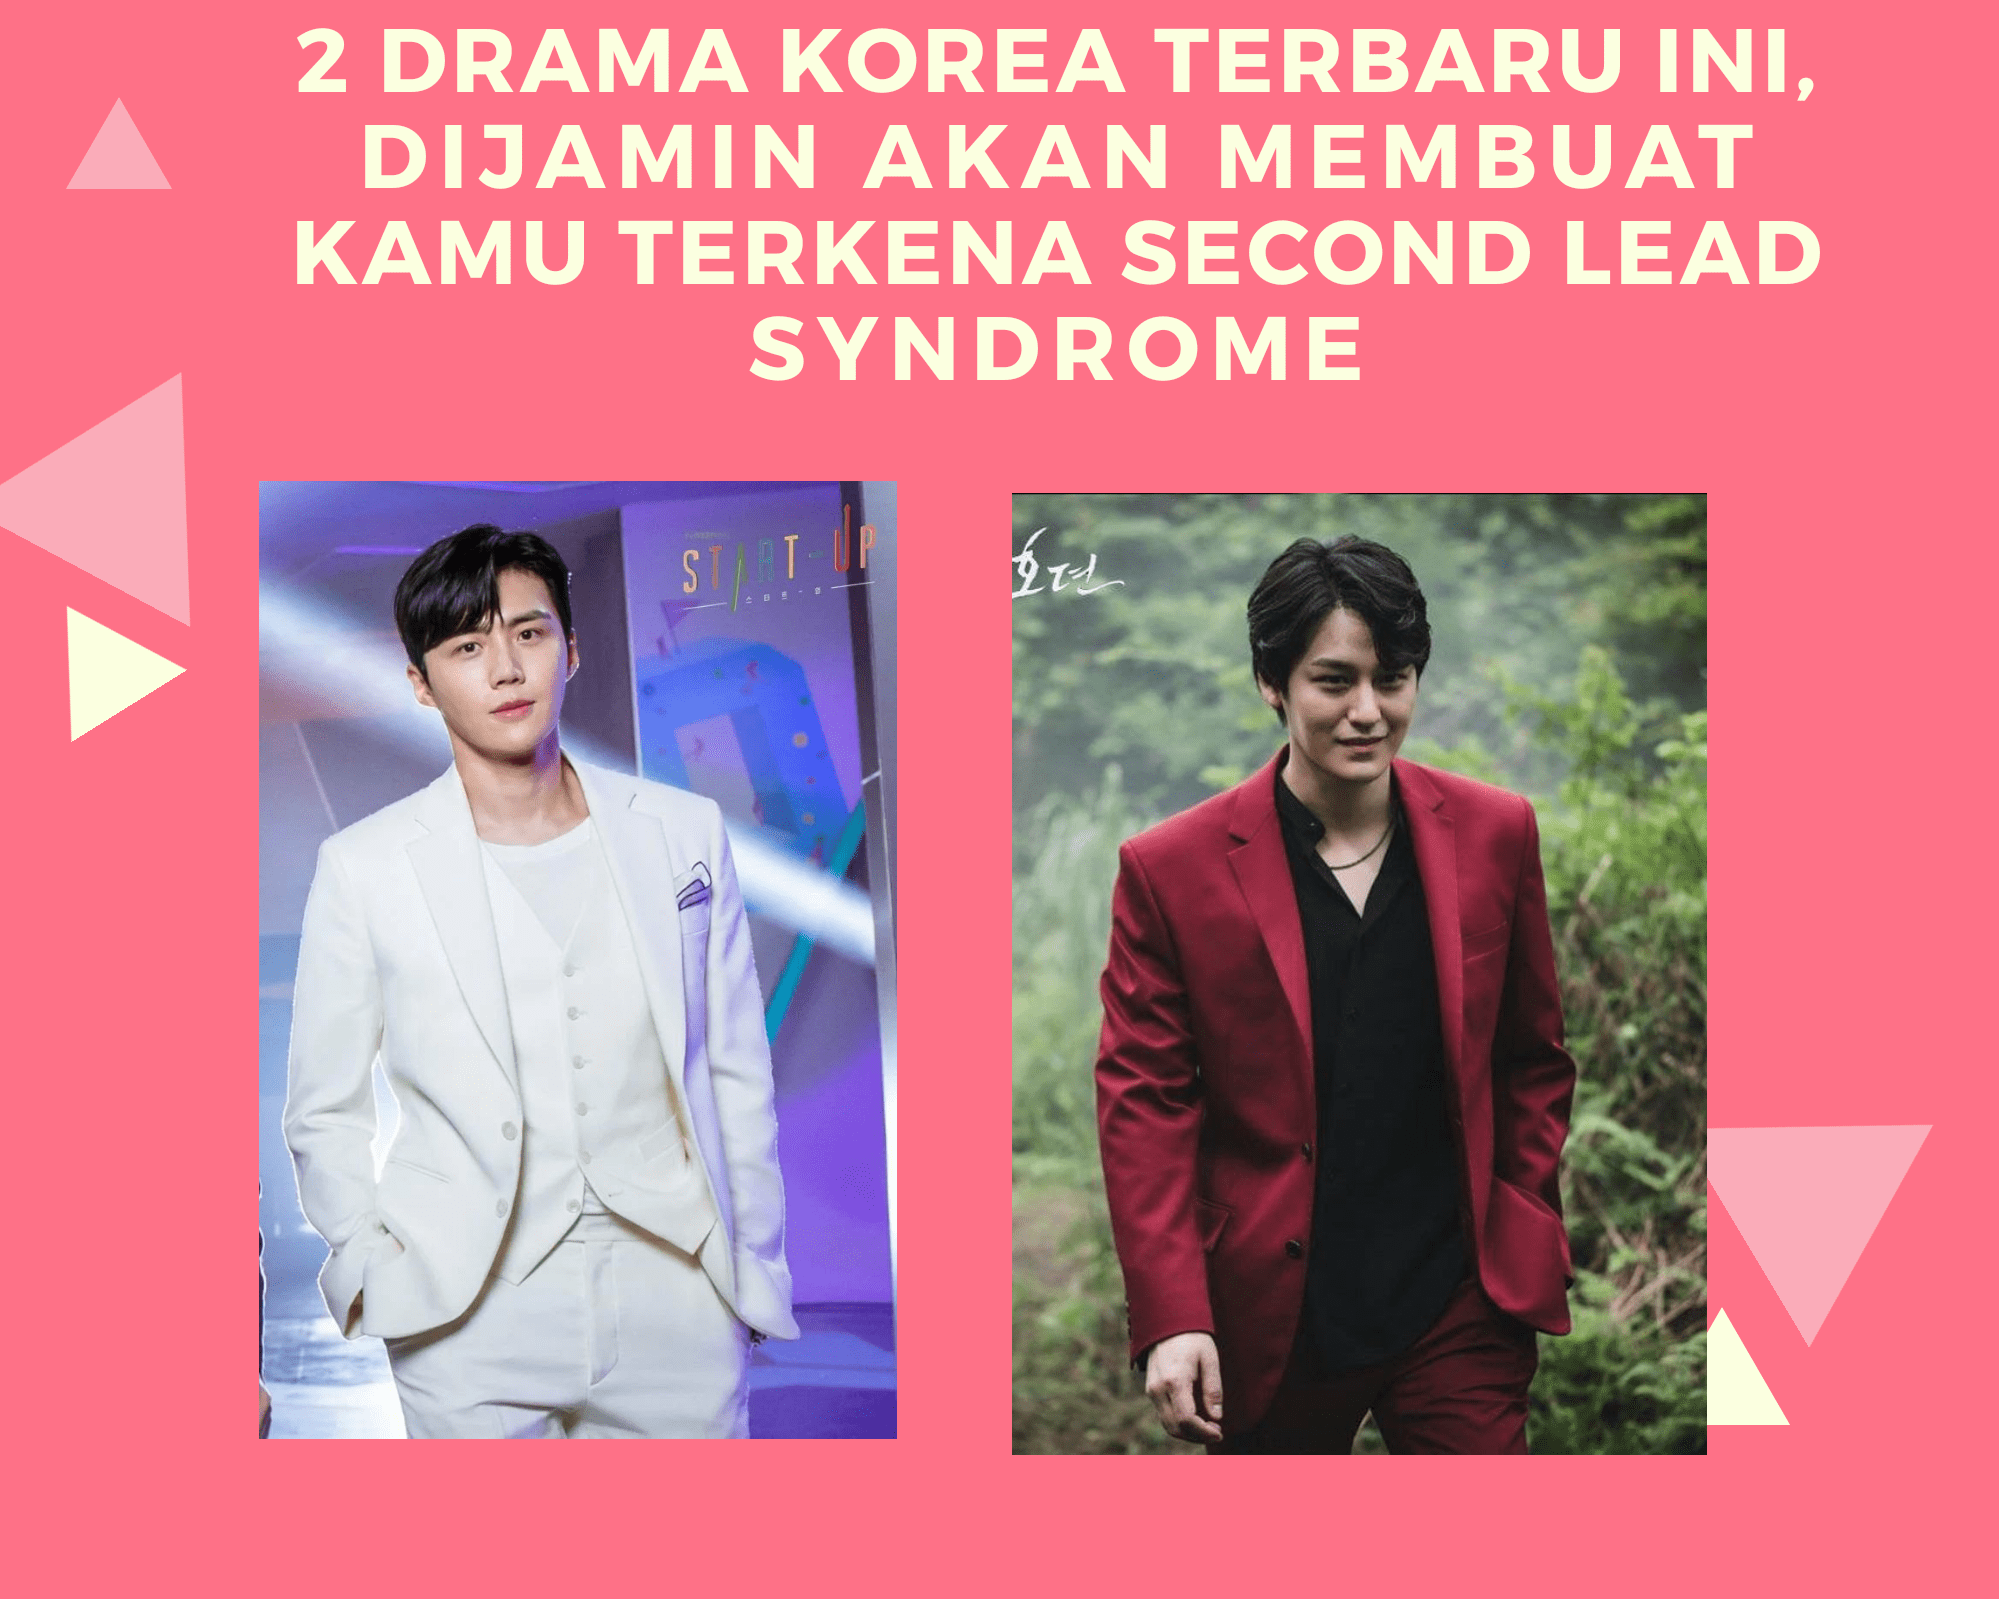 Dua Drama Korea Terbaru Ini Dijamin Akan Membuat Kamu Terkena “Second Lead Syndrome”